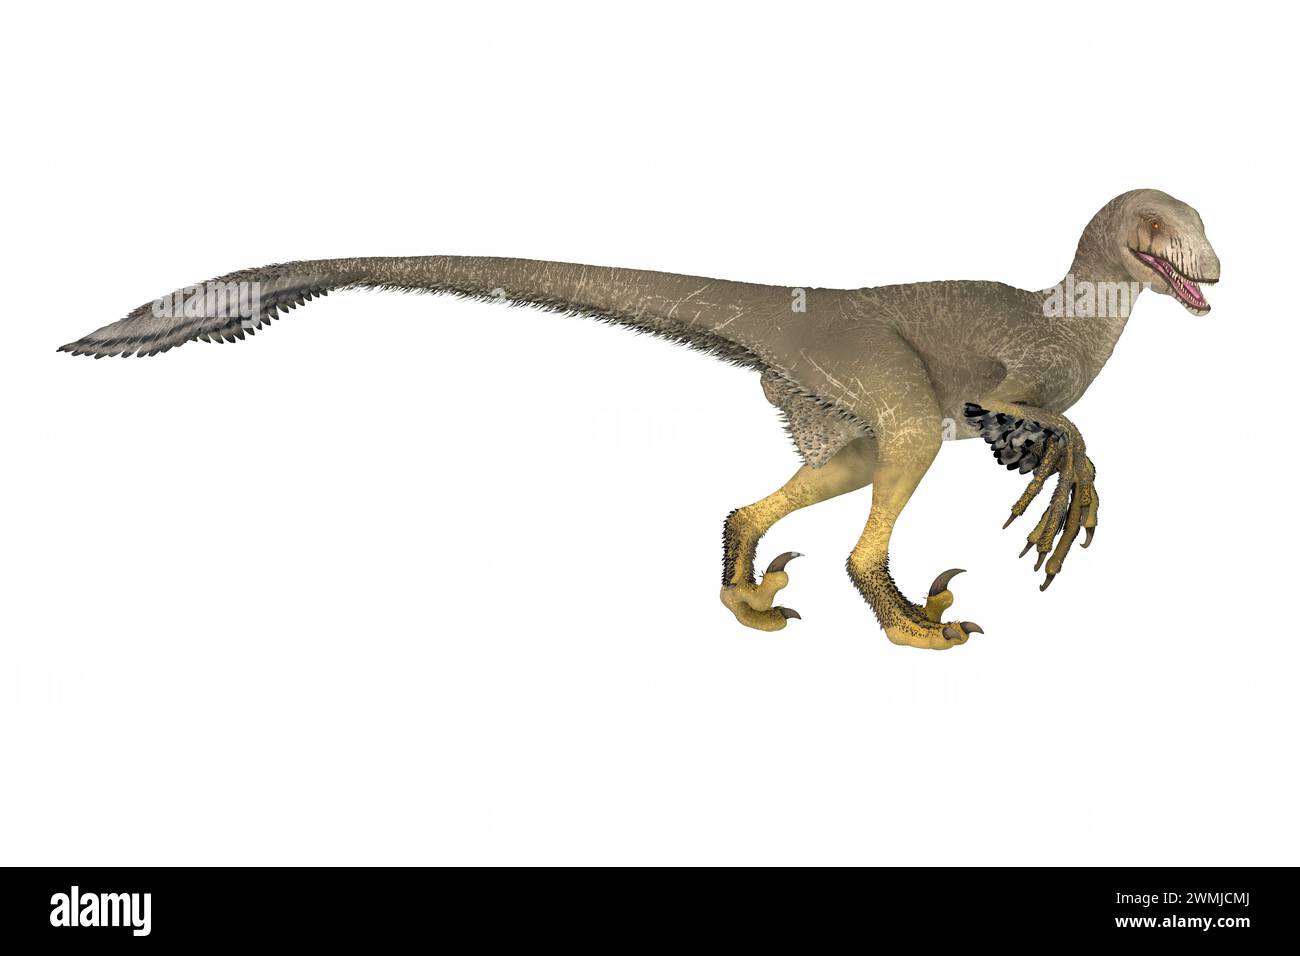 Dakotaraptor war ein gefiederter, fleischfressender Dinosaurier, der während der Kreidezeit in South Dakota lebte. Stockfoto